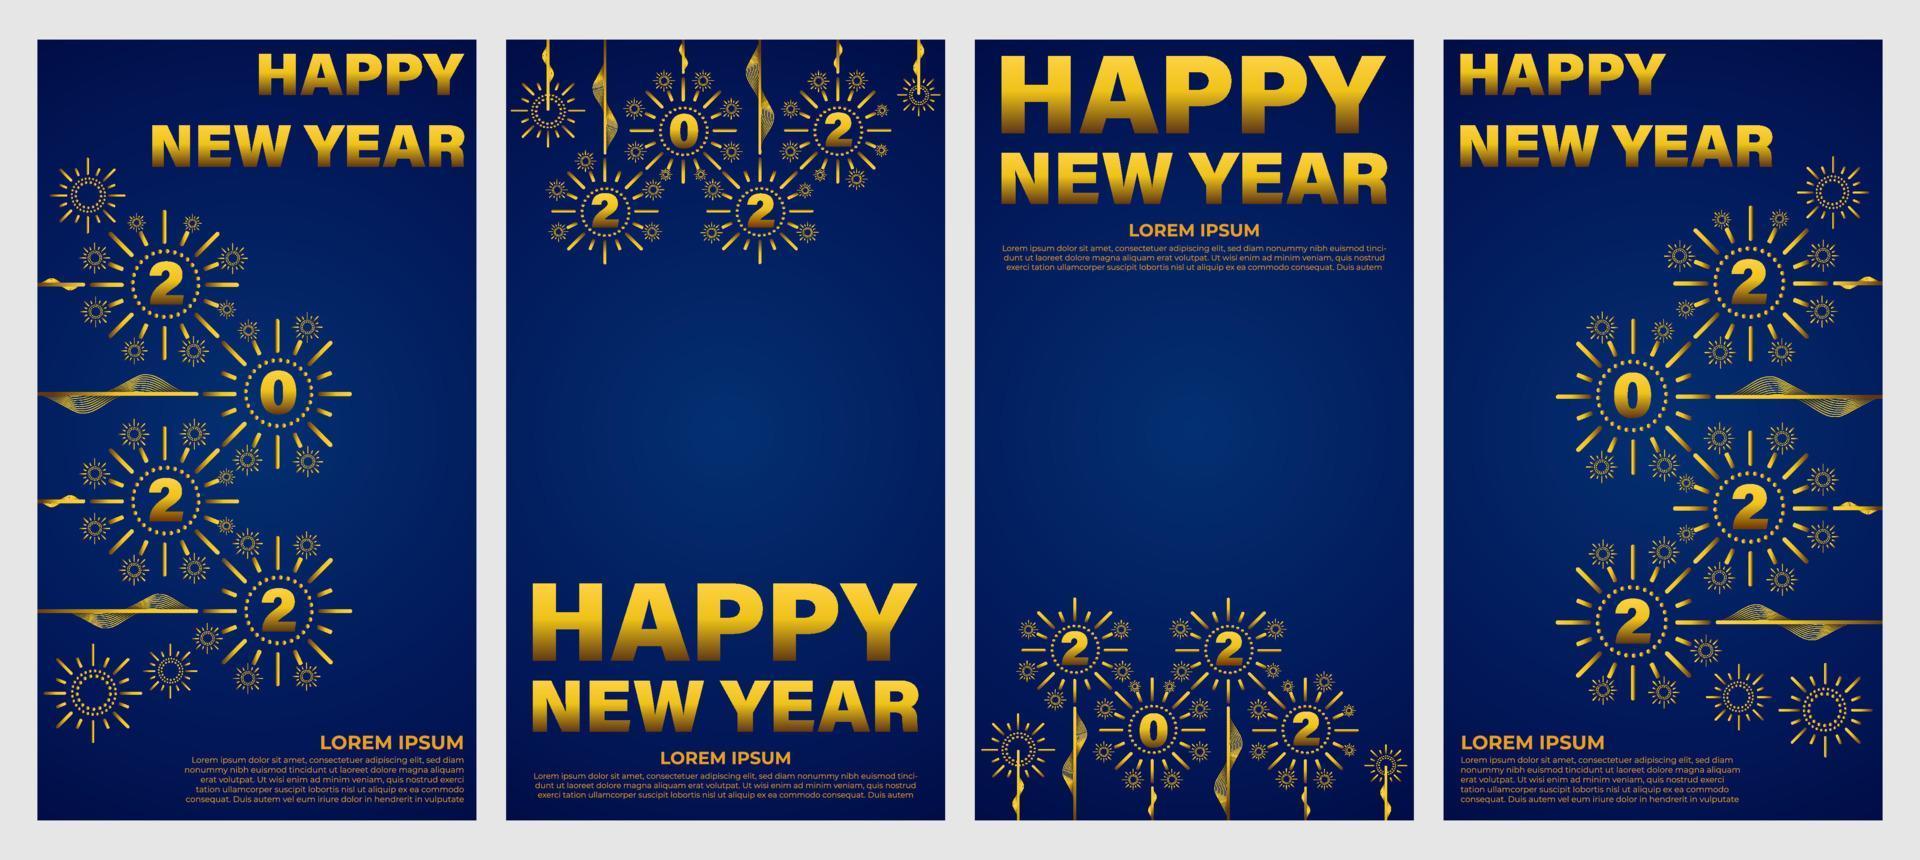 comemoração do ano novo em azul e dourado histórias da mídia social vetor